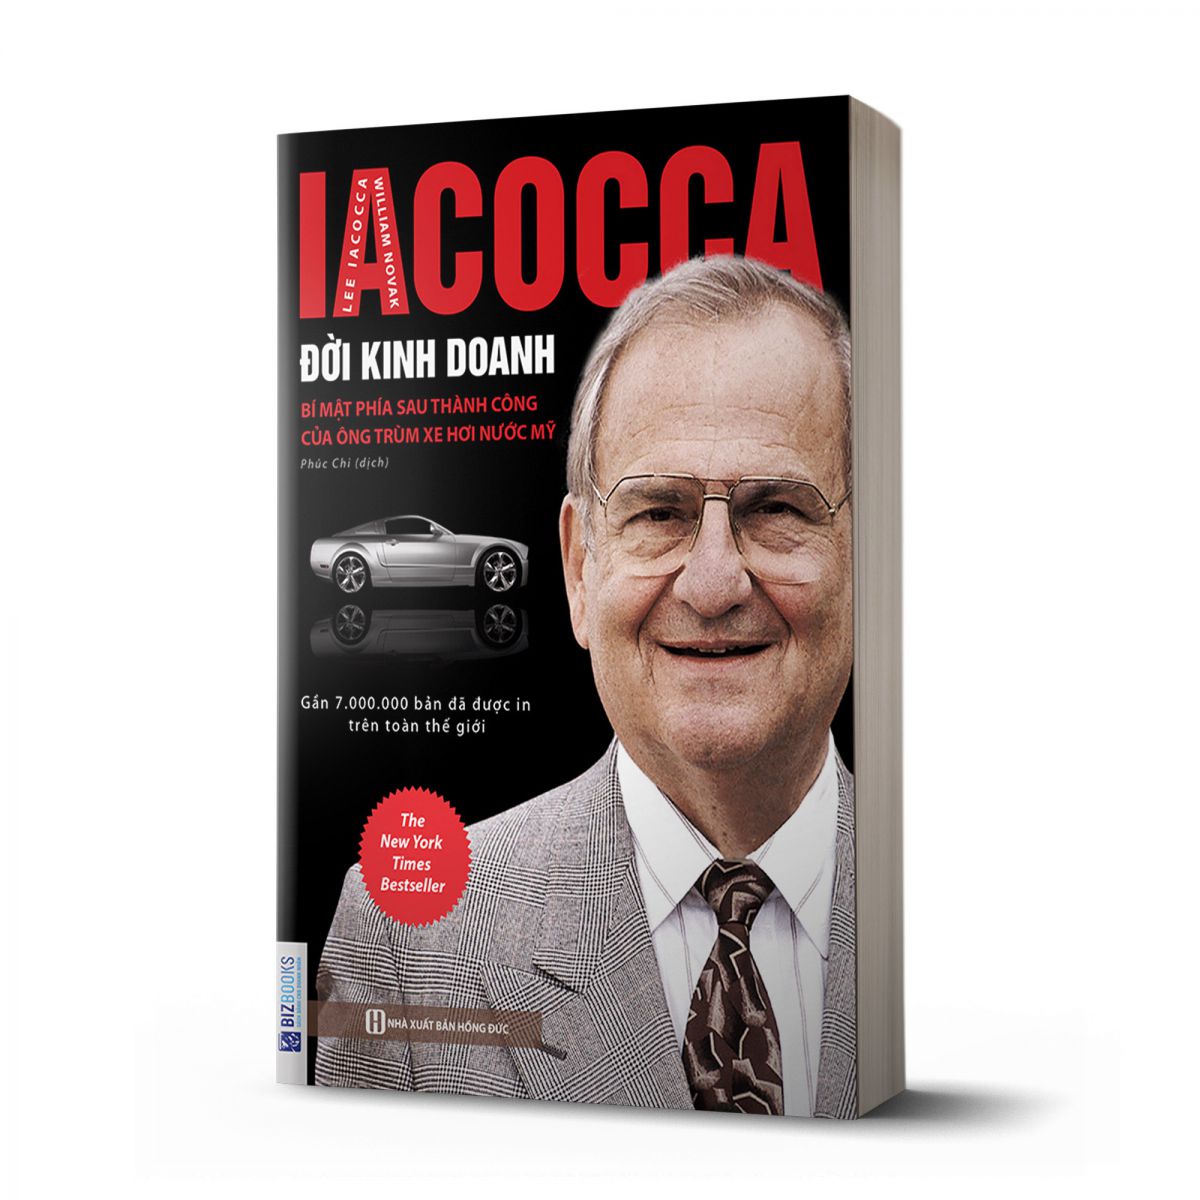 Iacocca: Đời kinh doanh - Bí mật phía sau thành công của ông trùm xe hơi nước Mỹ 1 